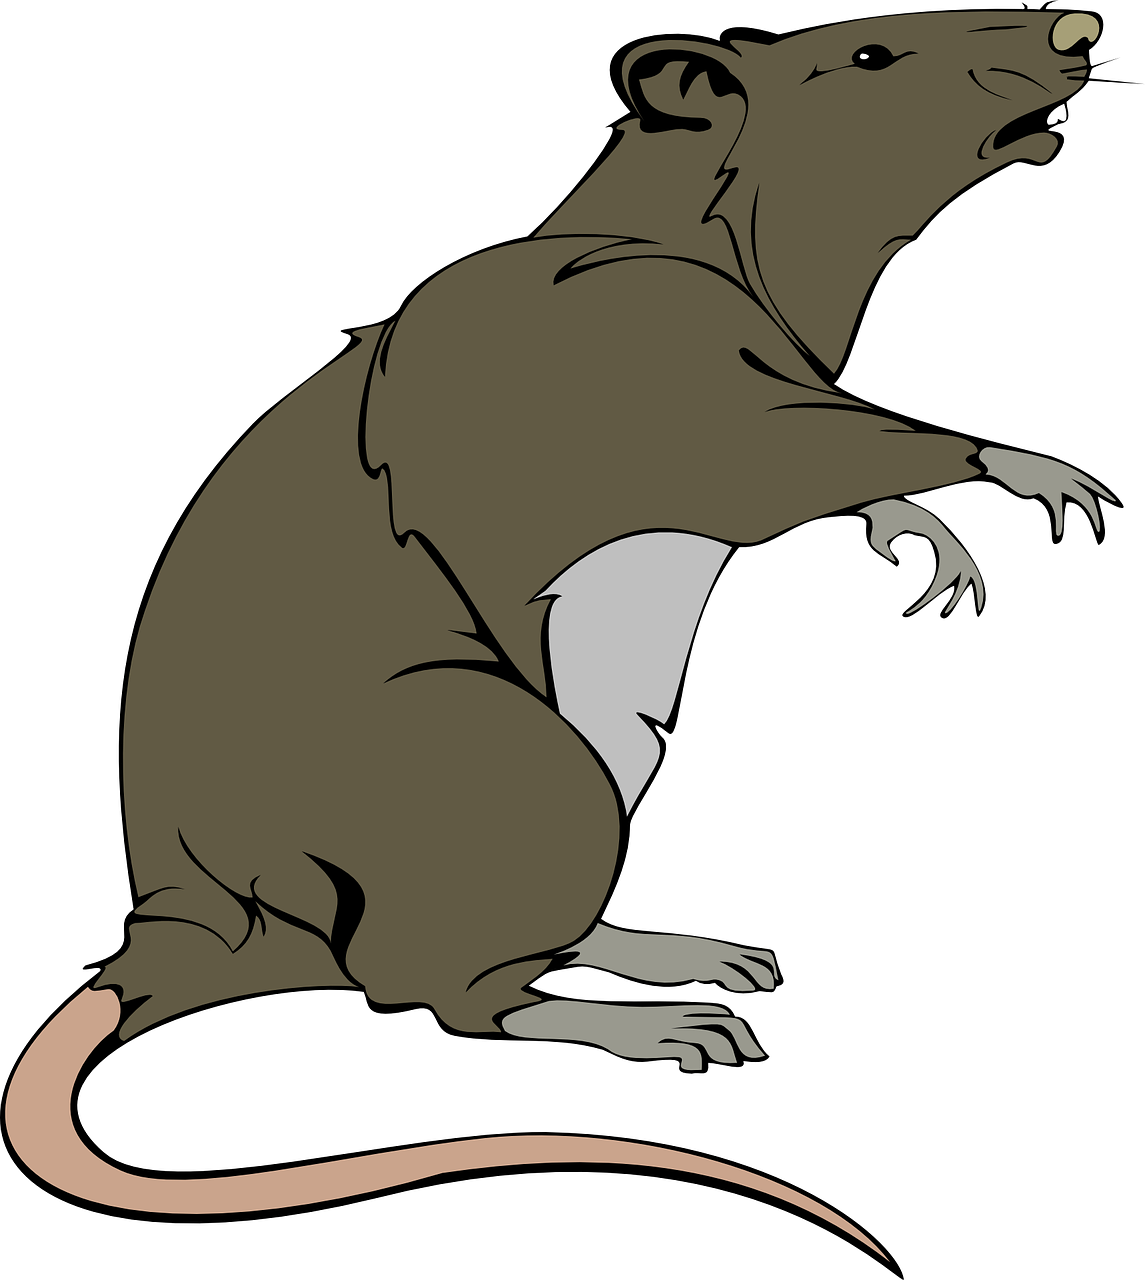 Illustration råtta